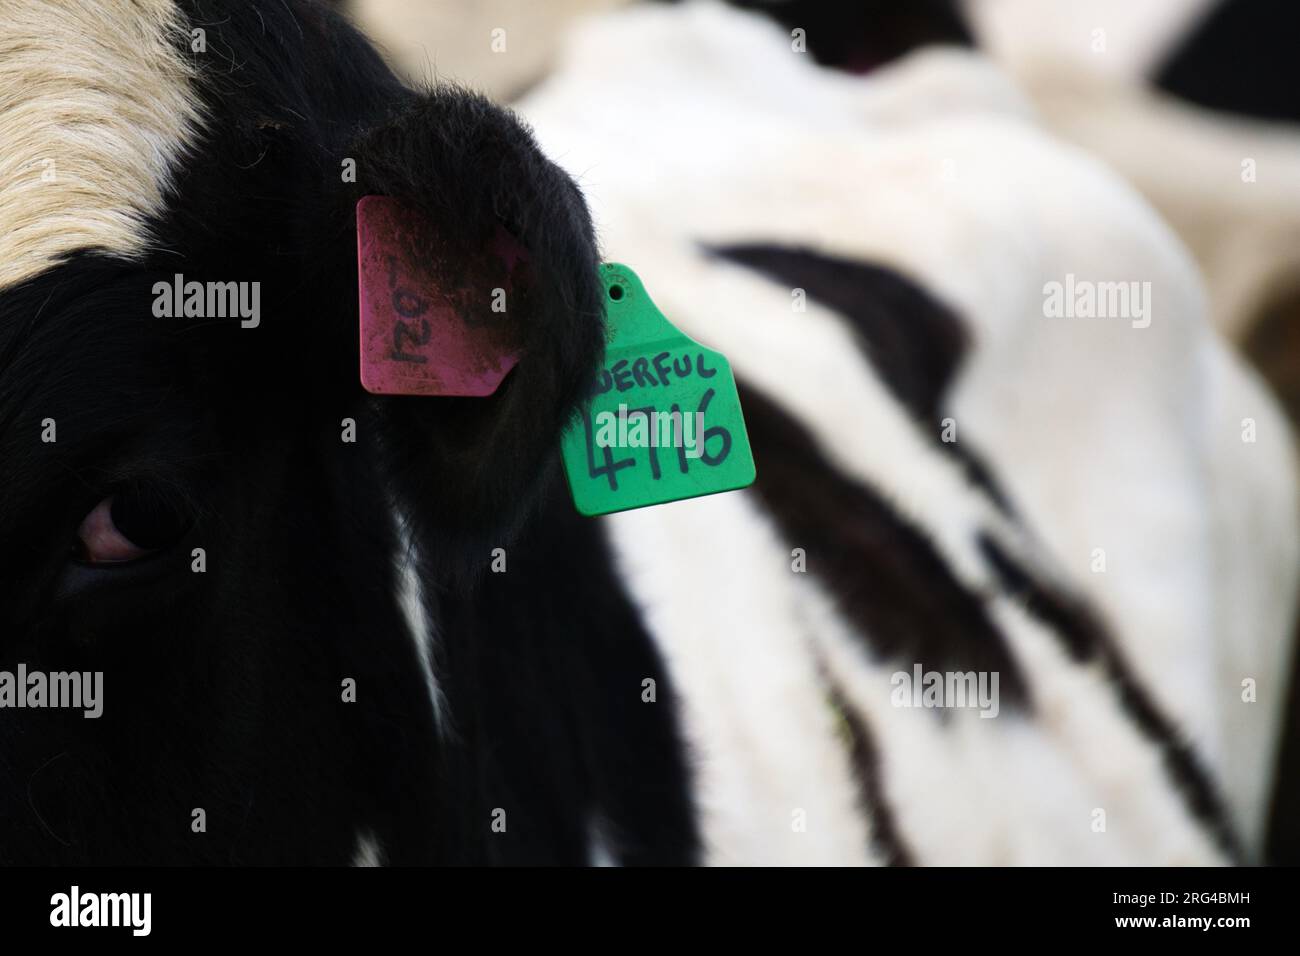 Chiusura delle etichette auricolari di identificazione del bestiame viola e verde applicate all'orecchio della vacca da latte Holstein Friesian Foto Stock